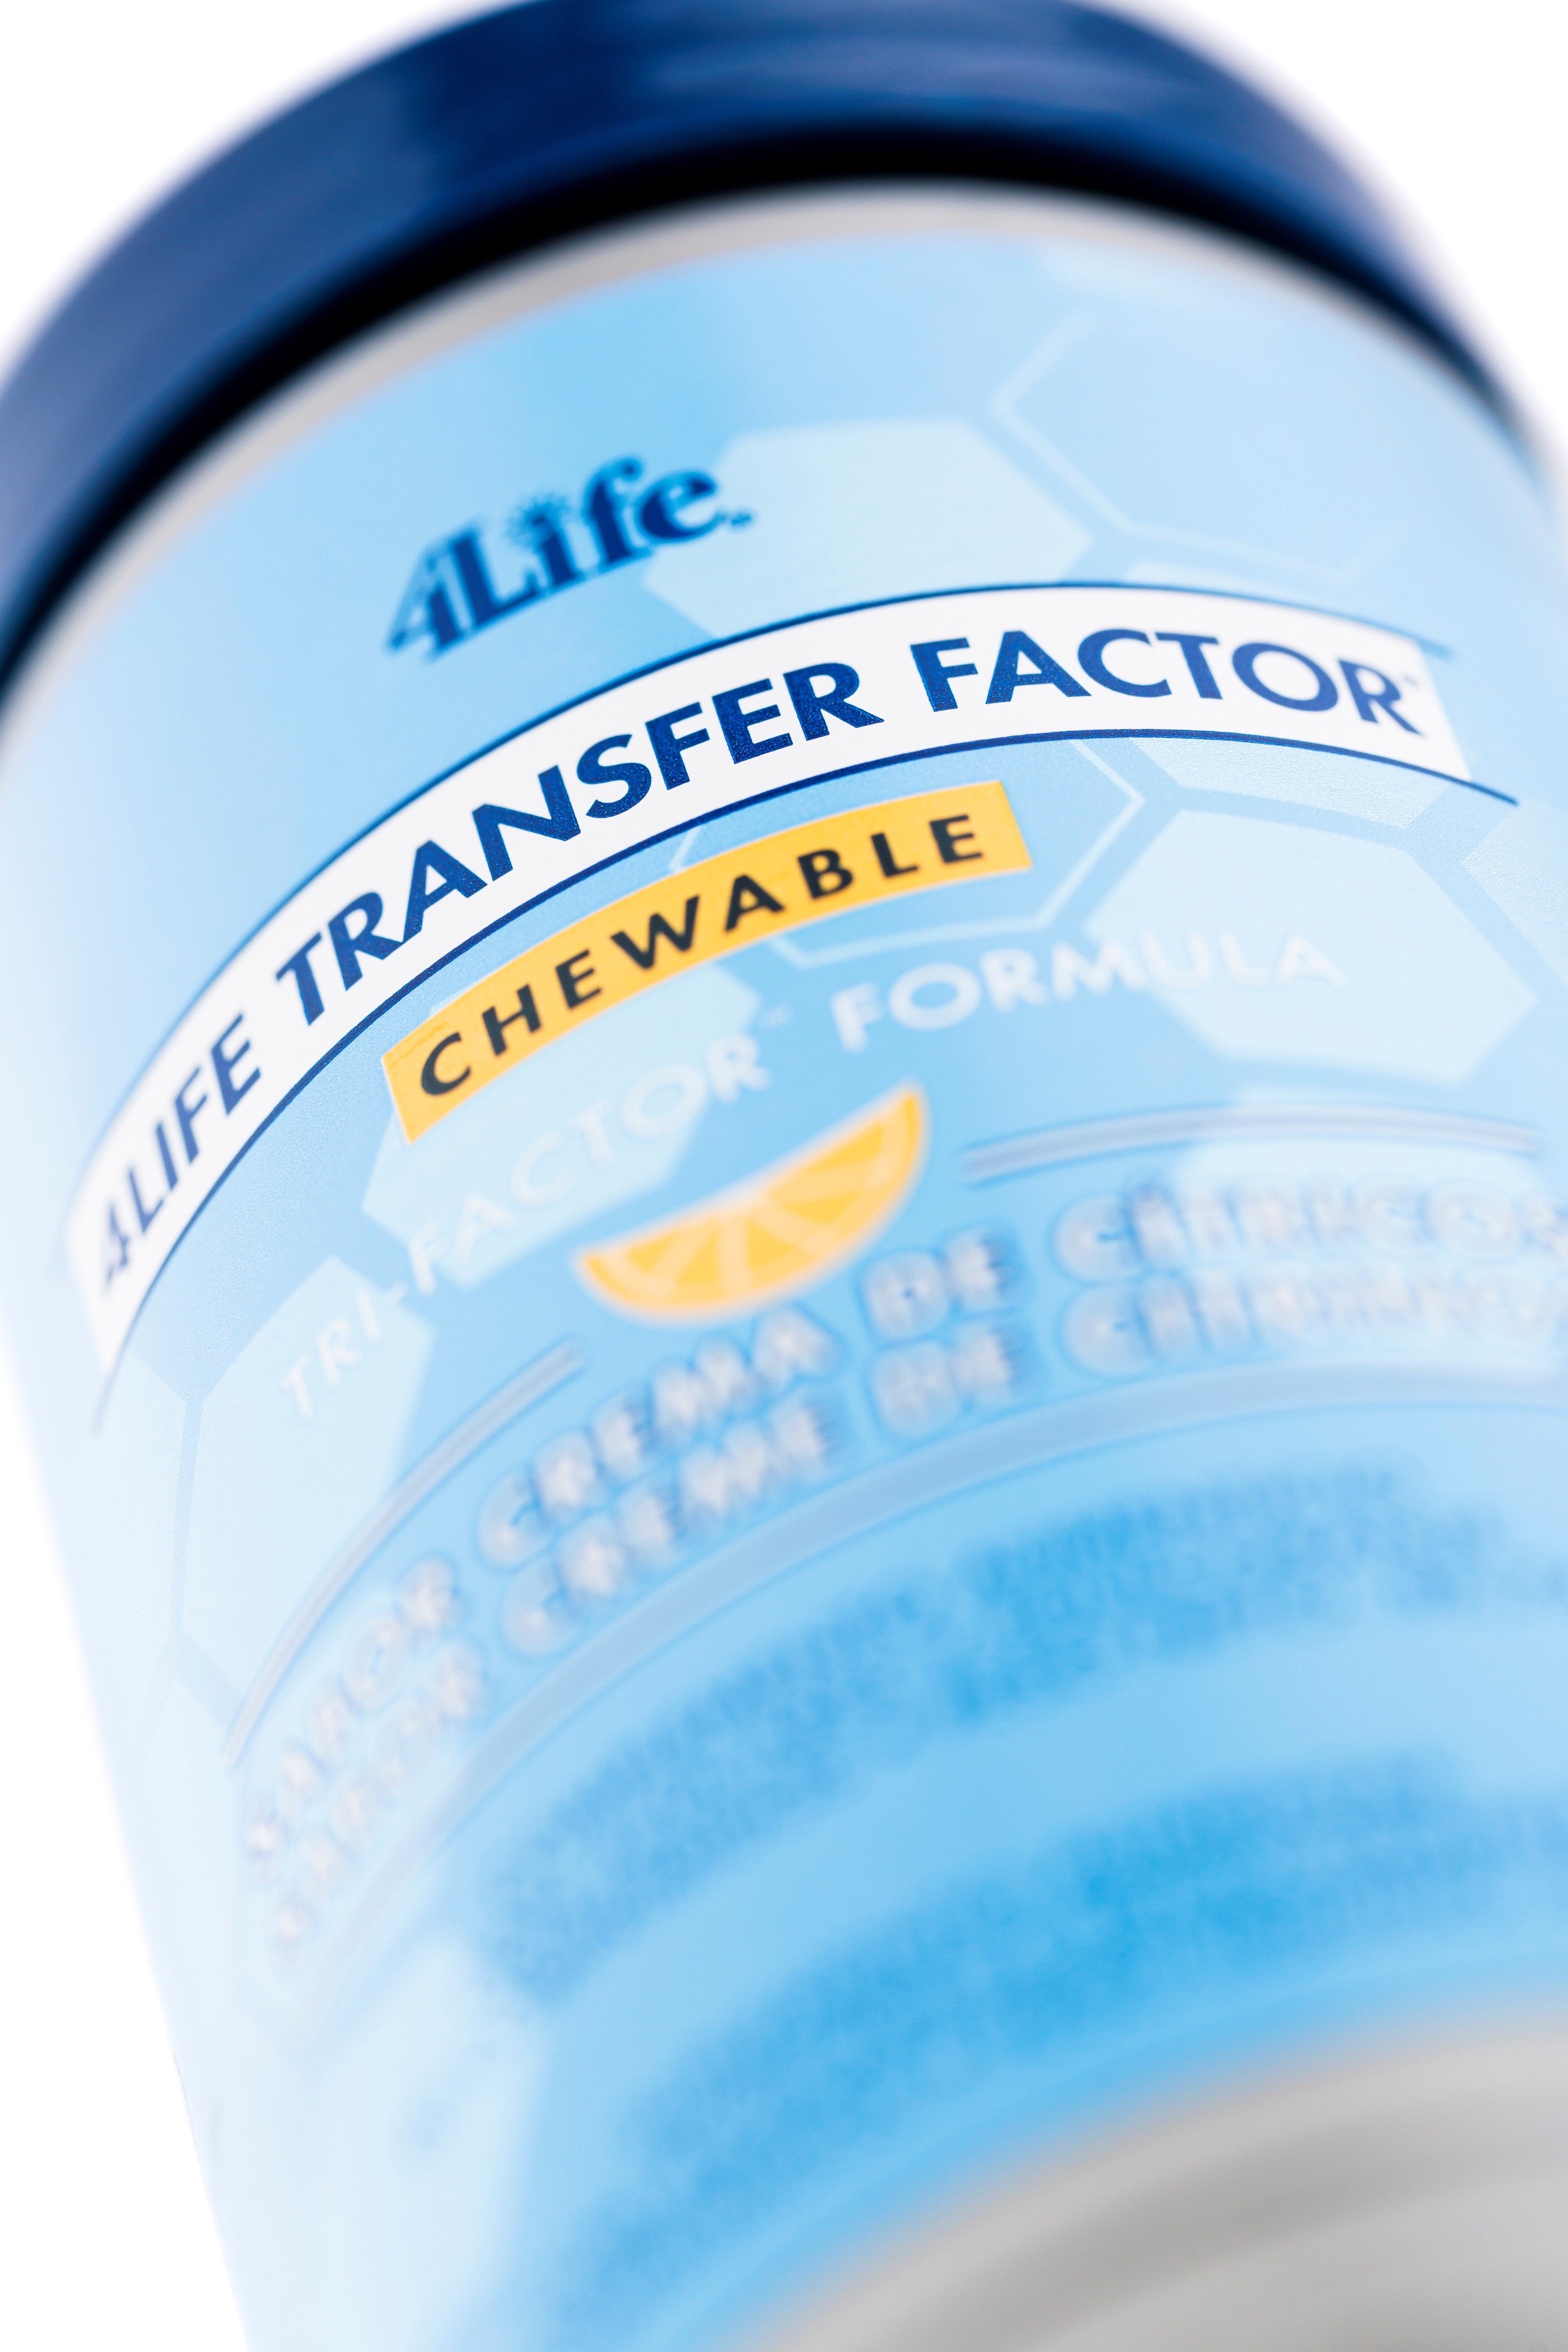 4Life Transfer Factor® Chewable Tri-Factor (90 comprimés à mâcher)